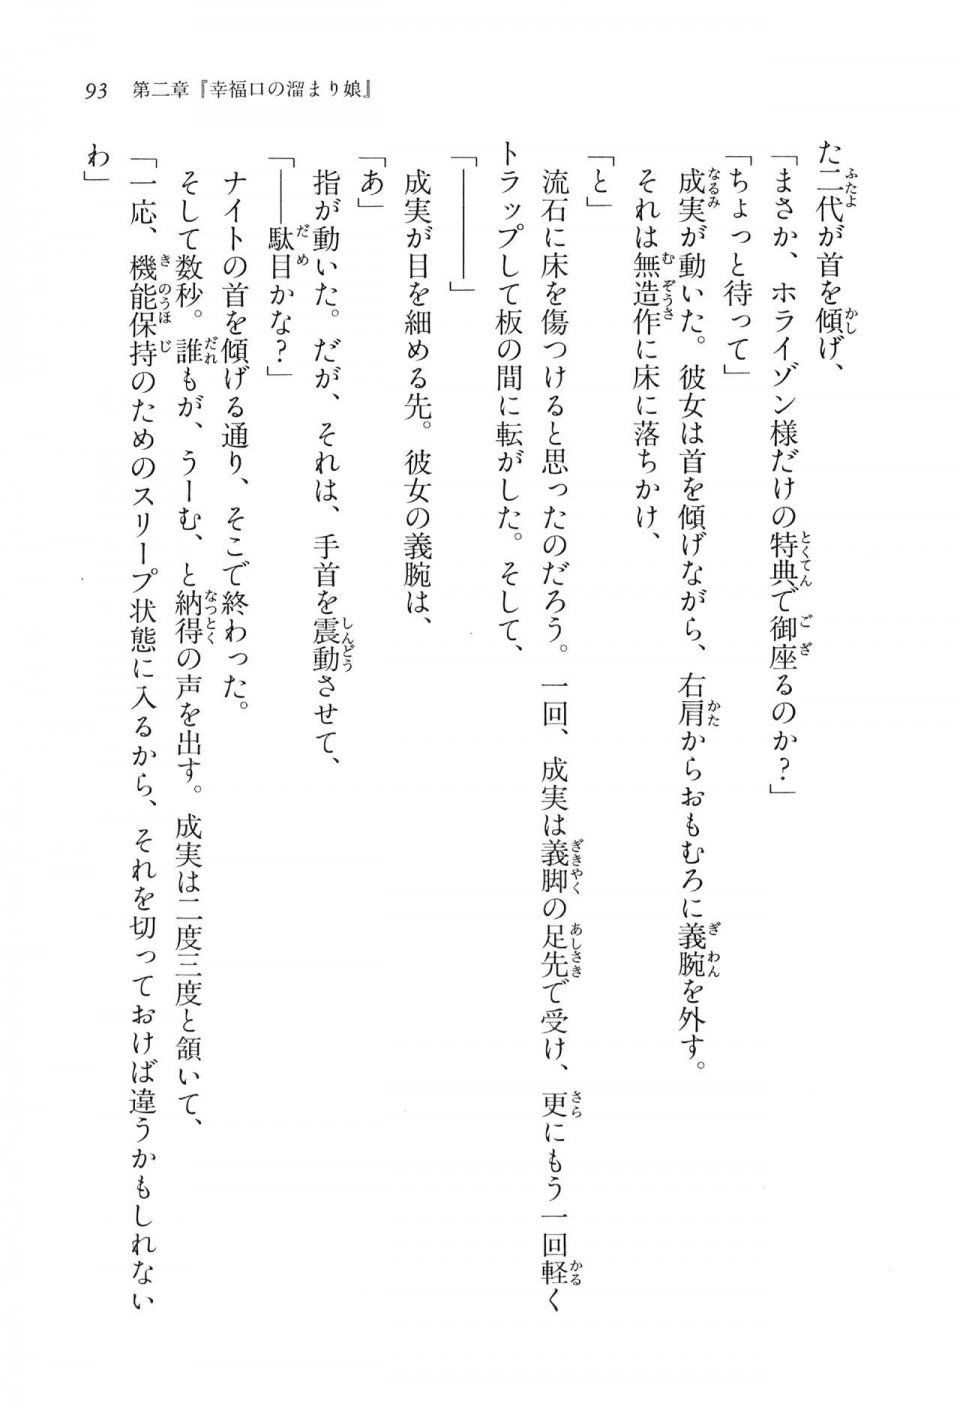 Kyoukai Senjou no Horizon LN Vol 16(7A) - Photo #93